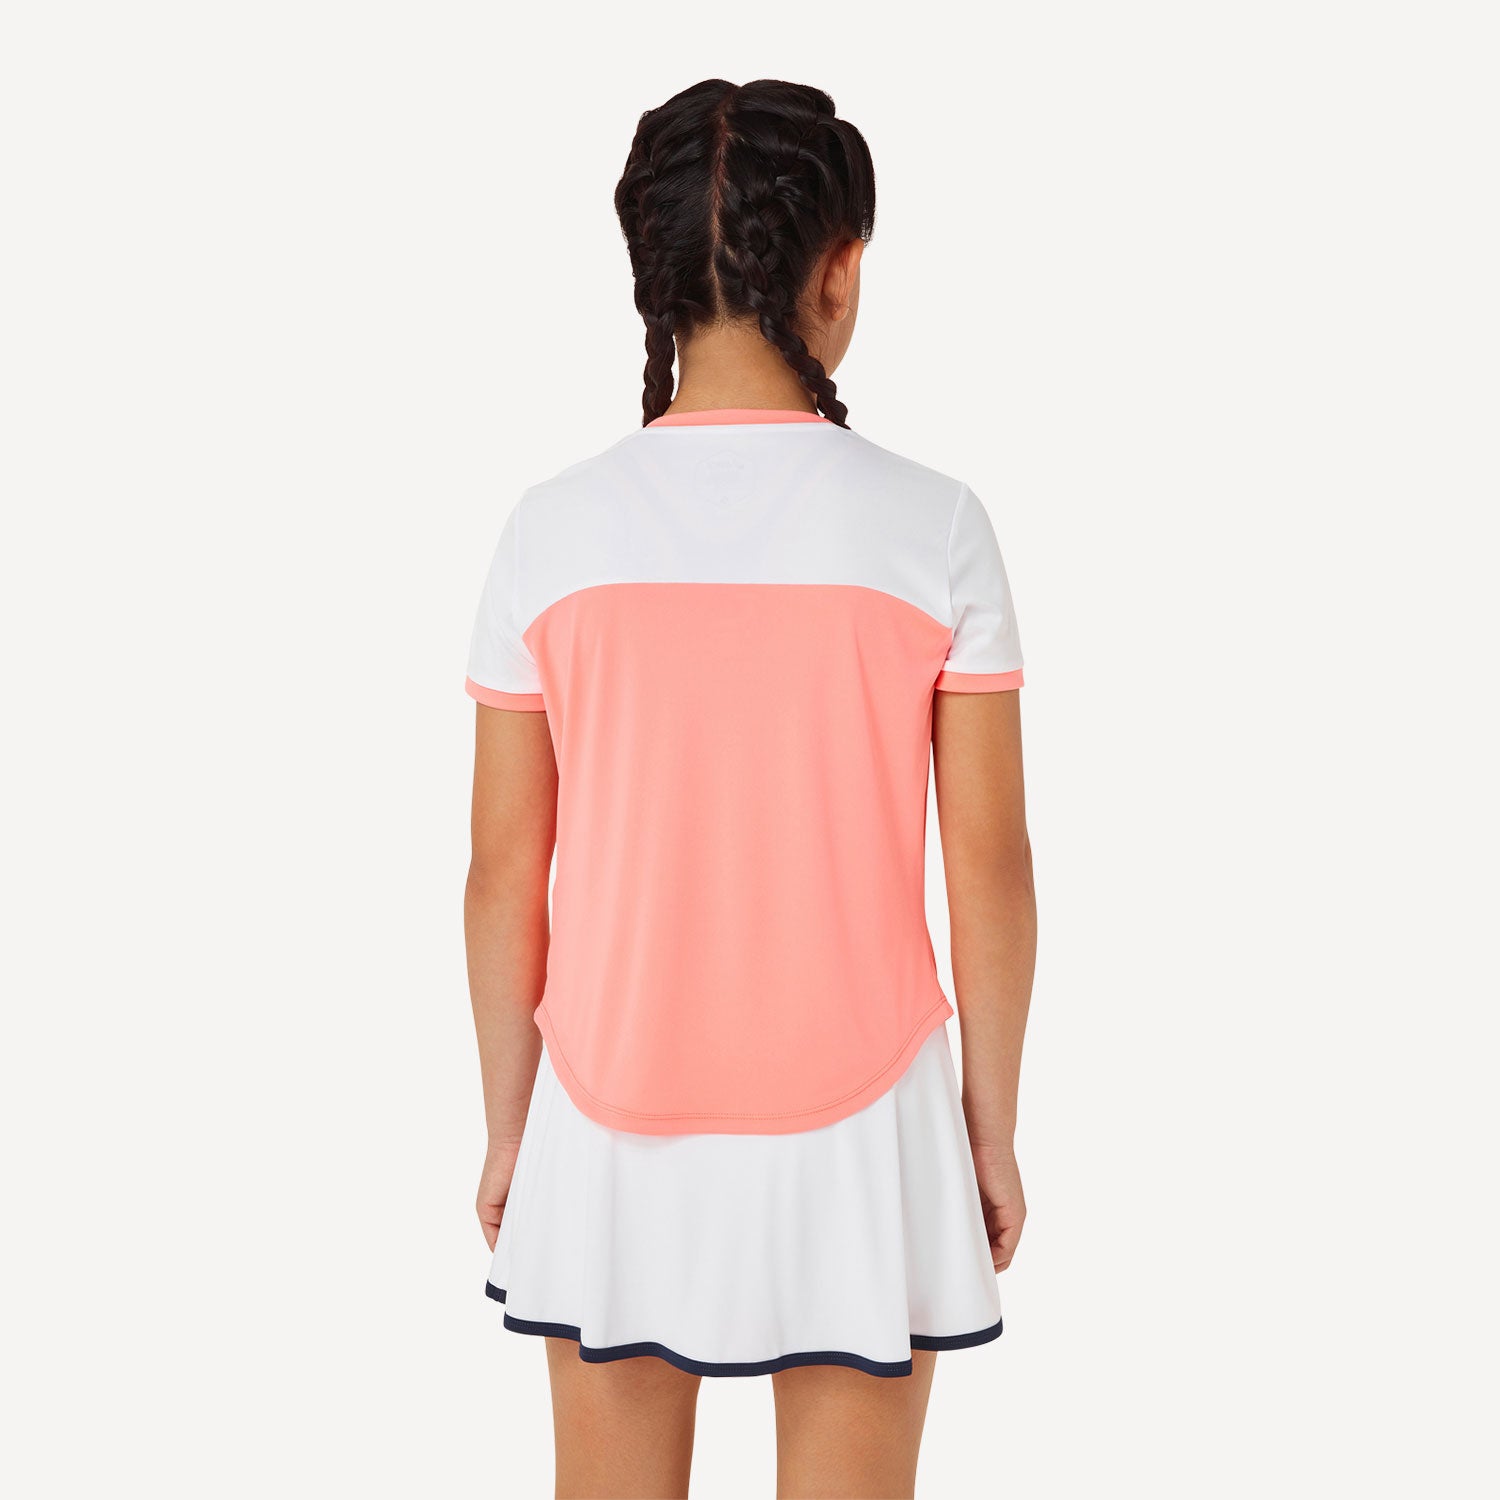 ASICS Girls' Tennis Shirt Orange (2)